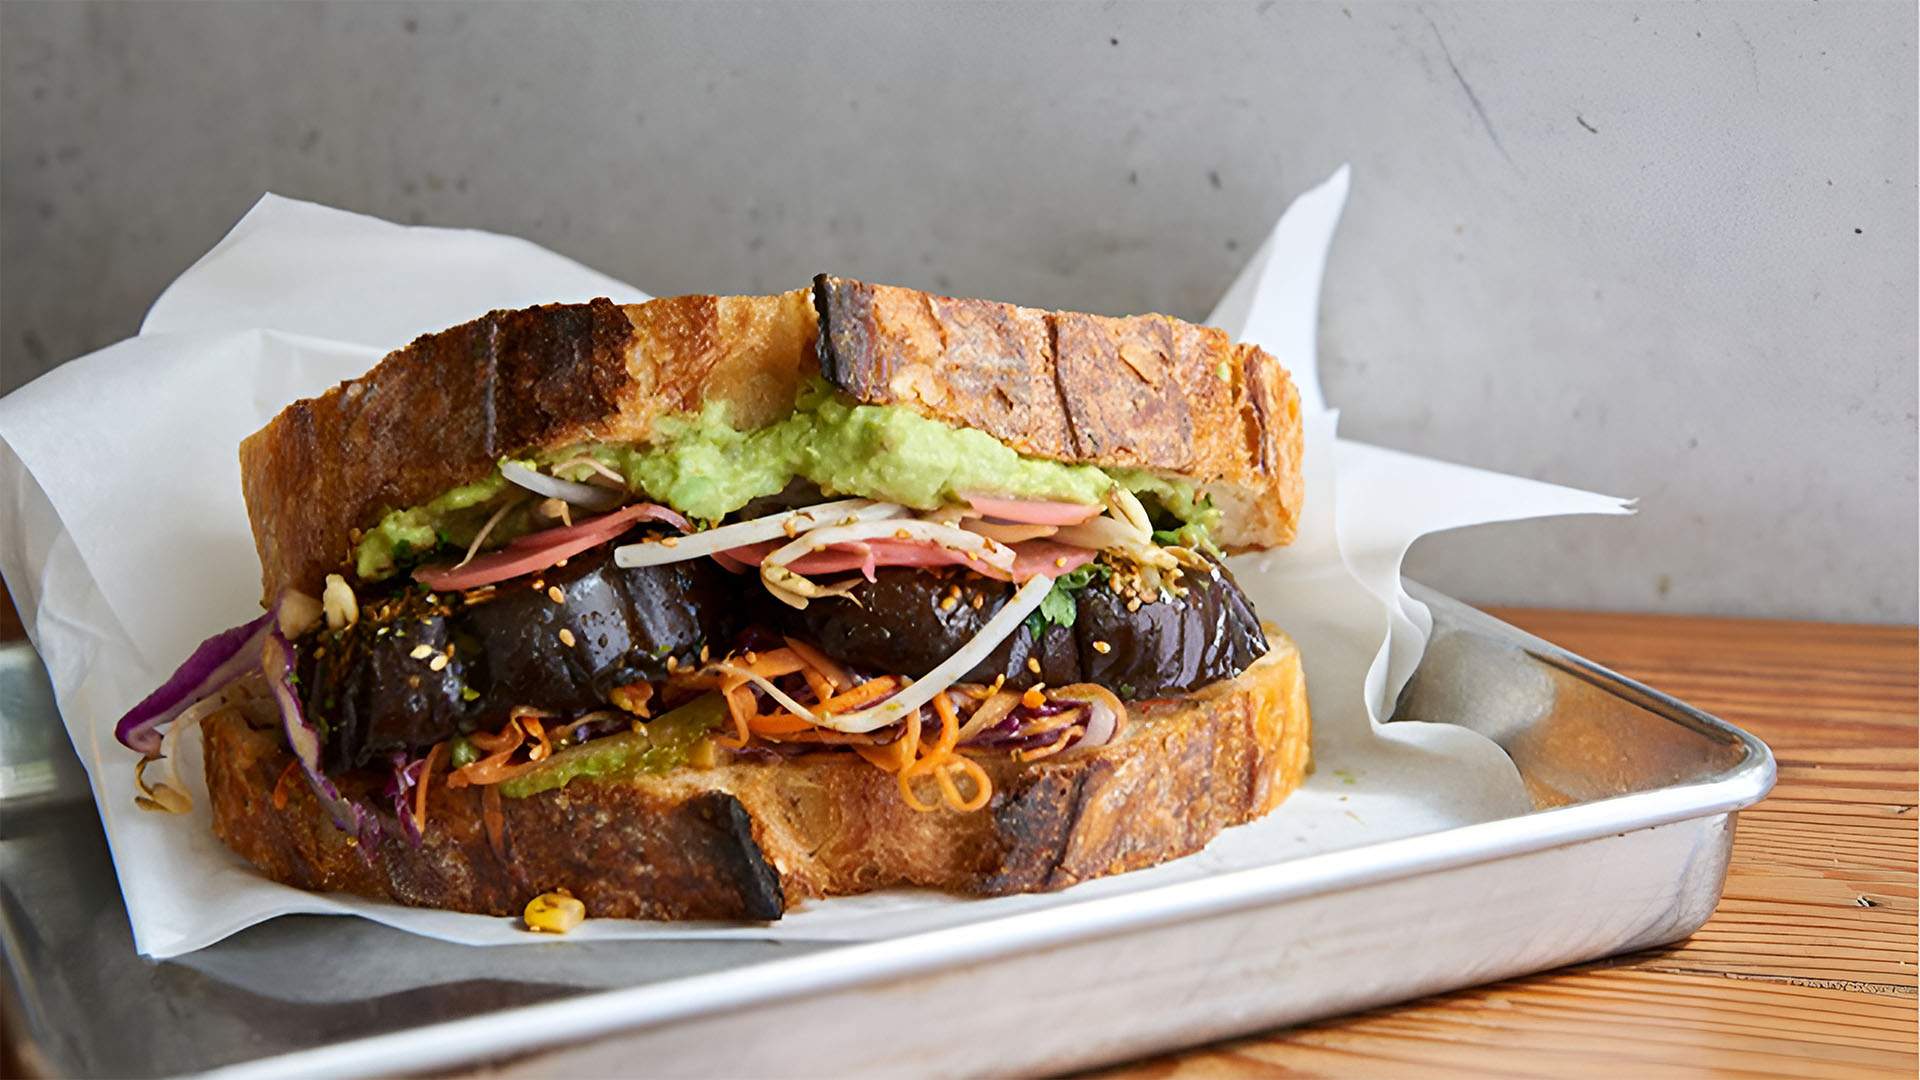 The miso eggplant sandwich from Sydney CBD's Joe's Sandwich Bar — one of the best sandwich shops in Sydney.